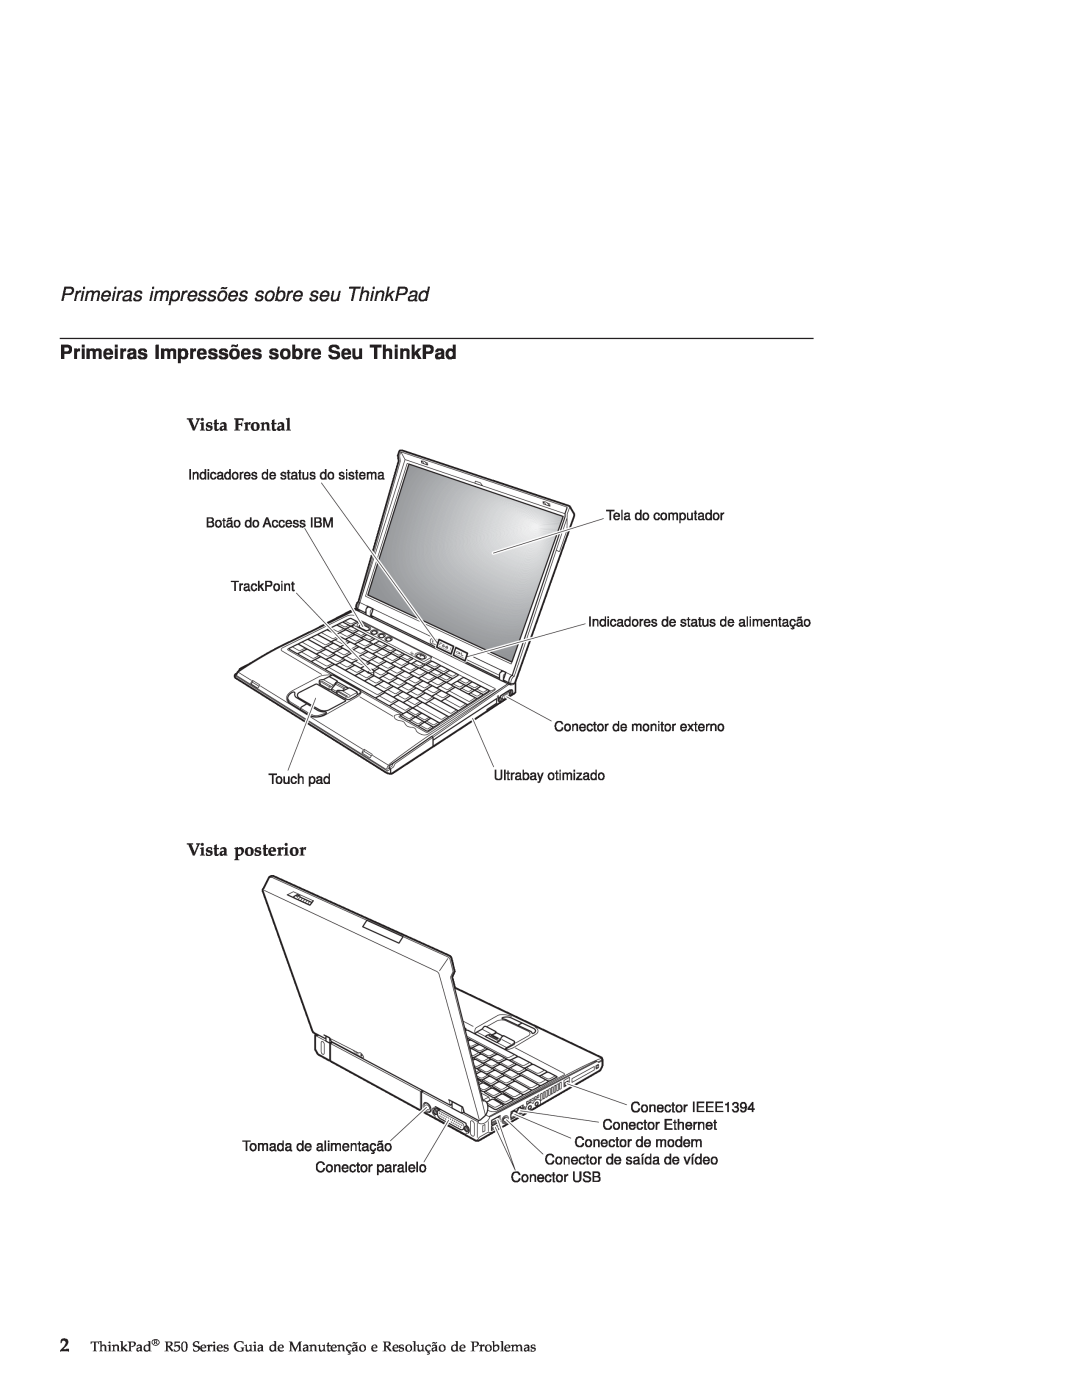 IBM R50 Primeiras impressões sobre seu ThinkPad, Primeiras Impressões sobre Seu ThinkPad, Vista Frontal Vista posterior 